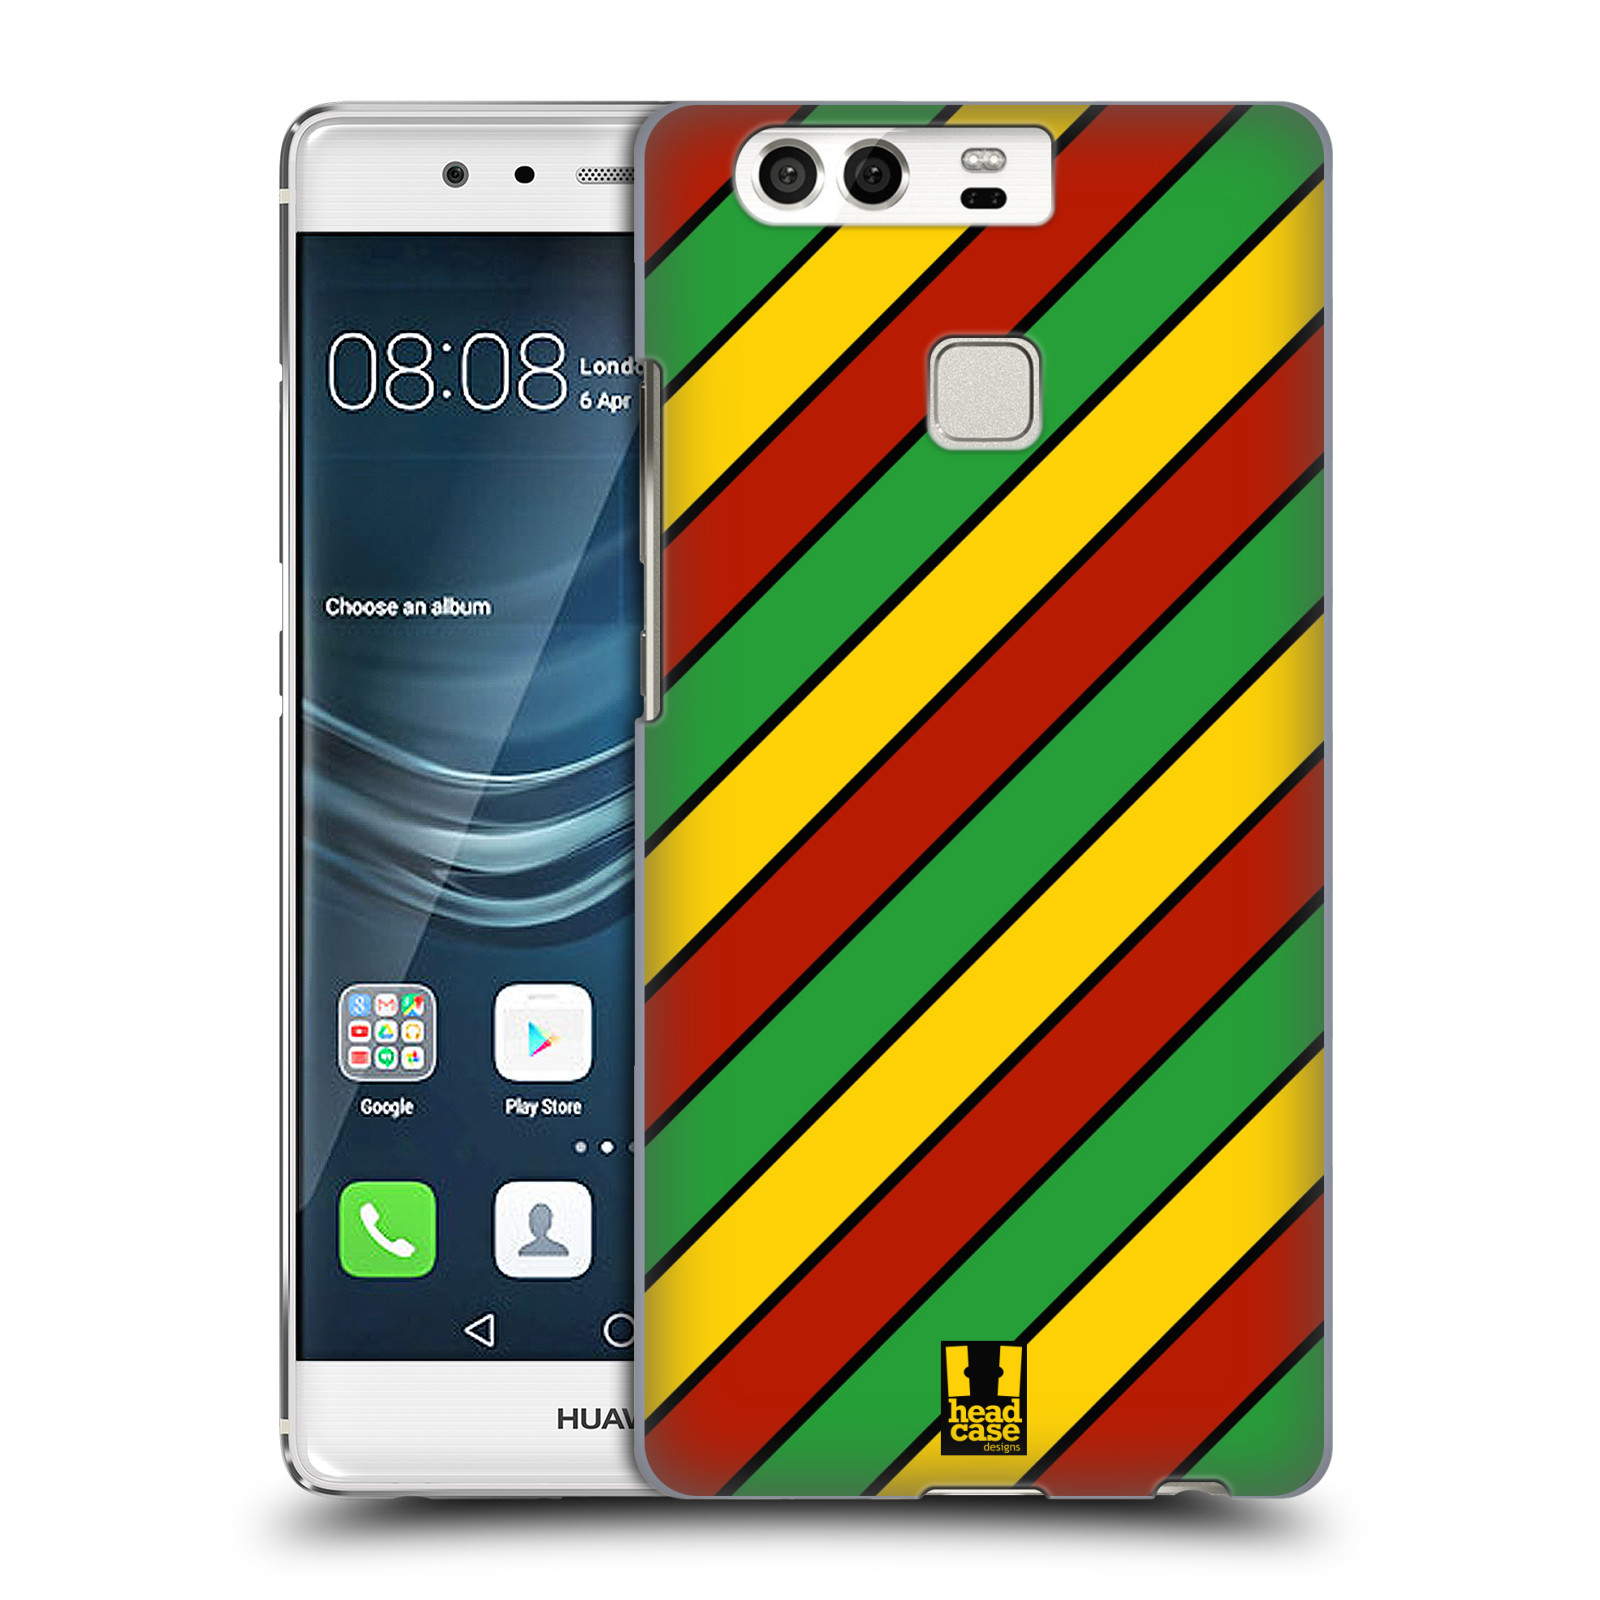 HEAD CASE plastový obal na mobil Huawei P9 / P9 DUAL SIM vzor Rasta barevné vzory PRUHY